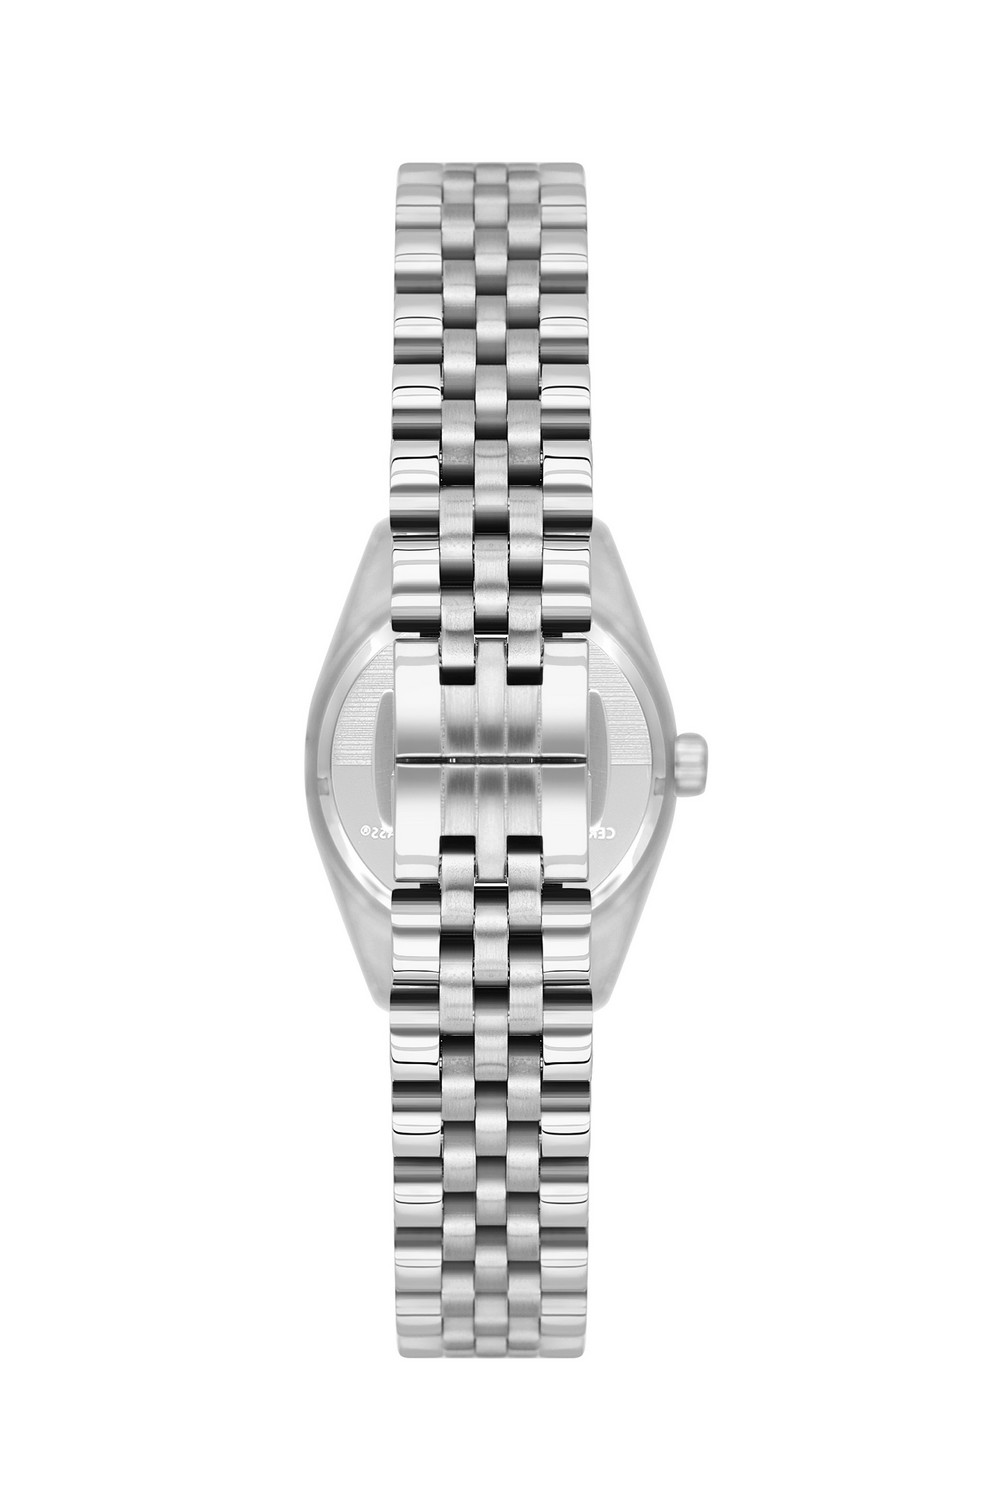 BEVERLY HILLS POLO CLUB  Женские часы, кварцевый механизм, сталь, 28 мм